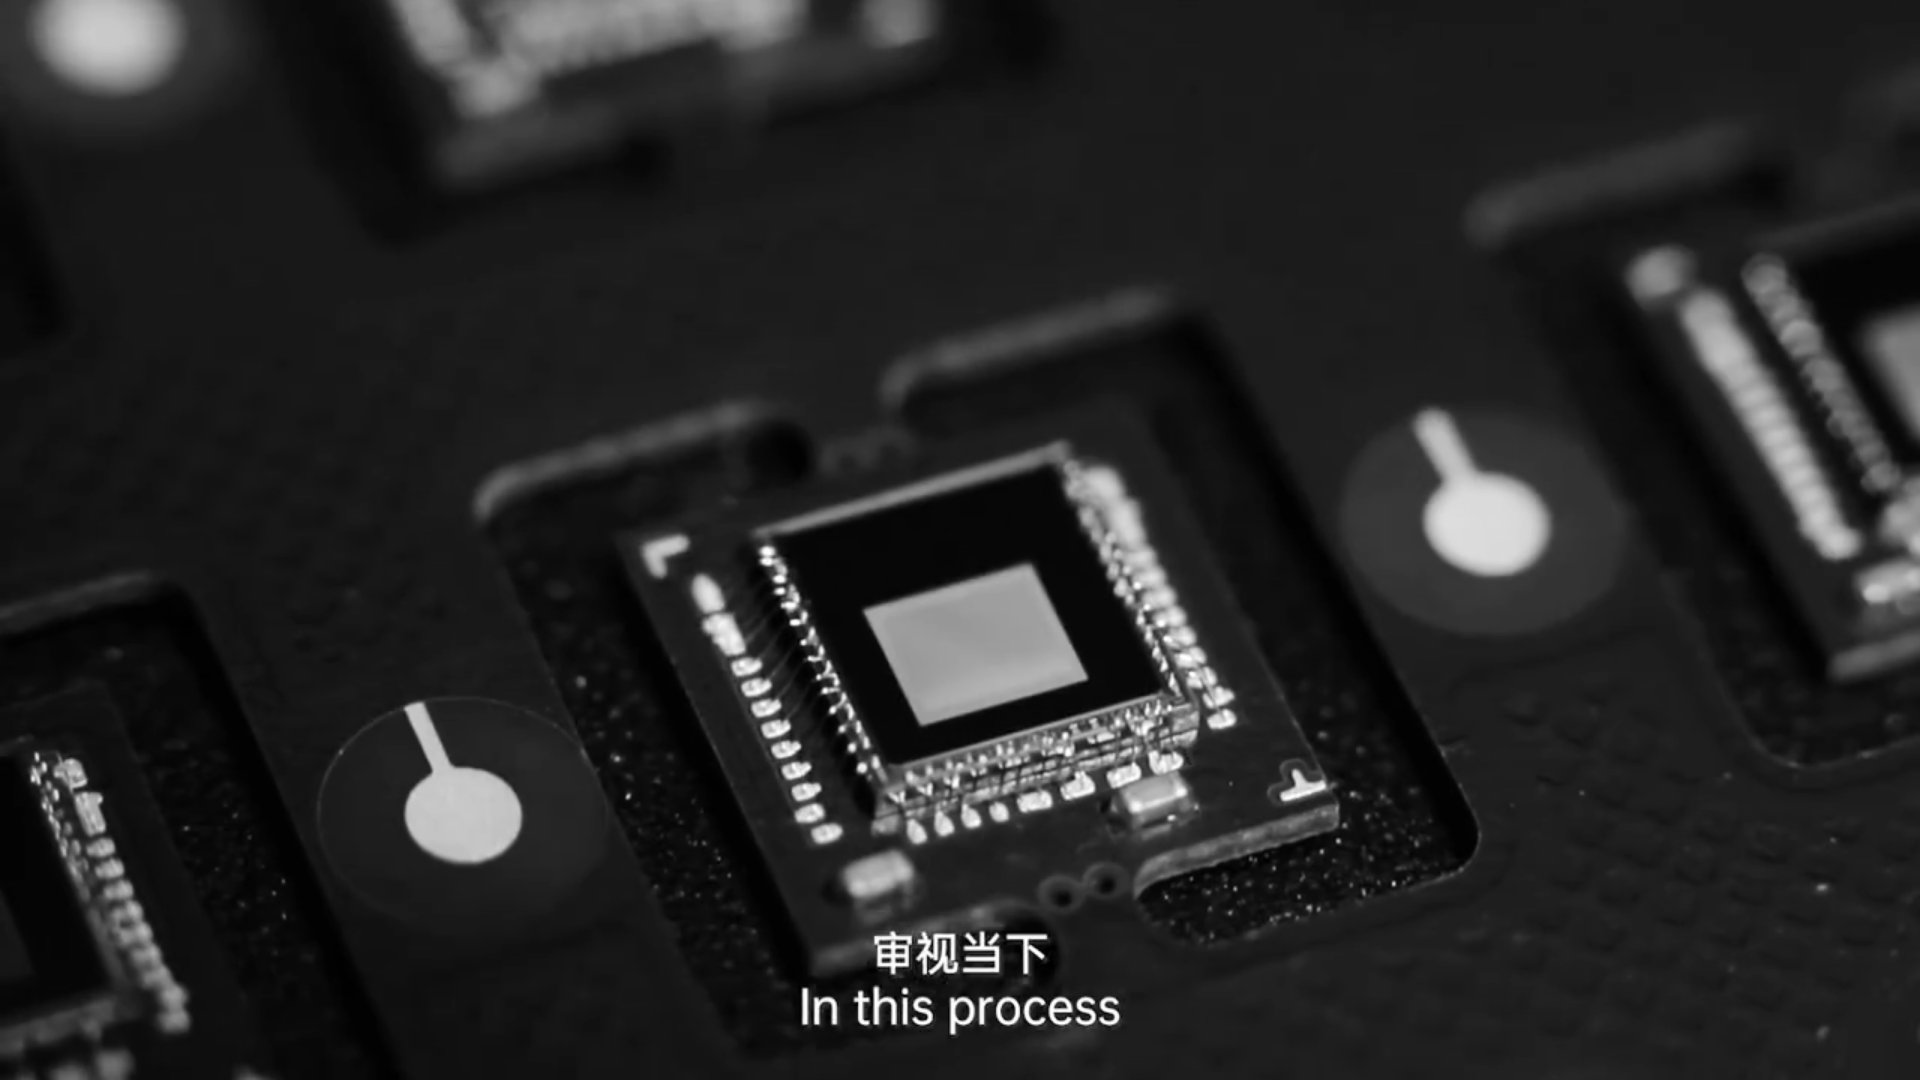 OPPO đăng tải video giải thích các bước phát triển hệ thống camera trên chiếc smartphone Find X2 Pro